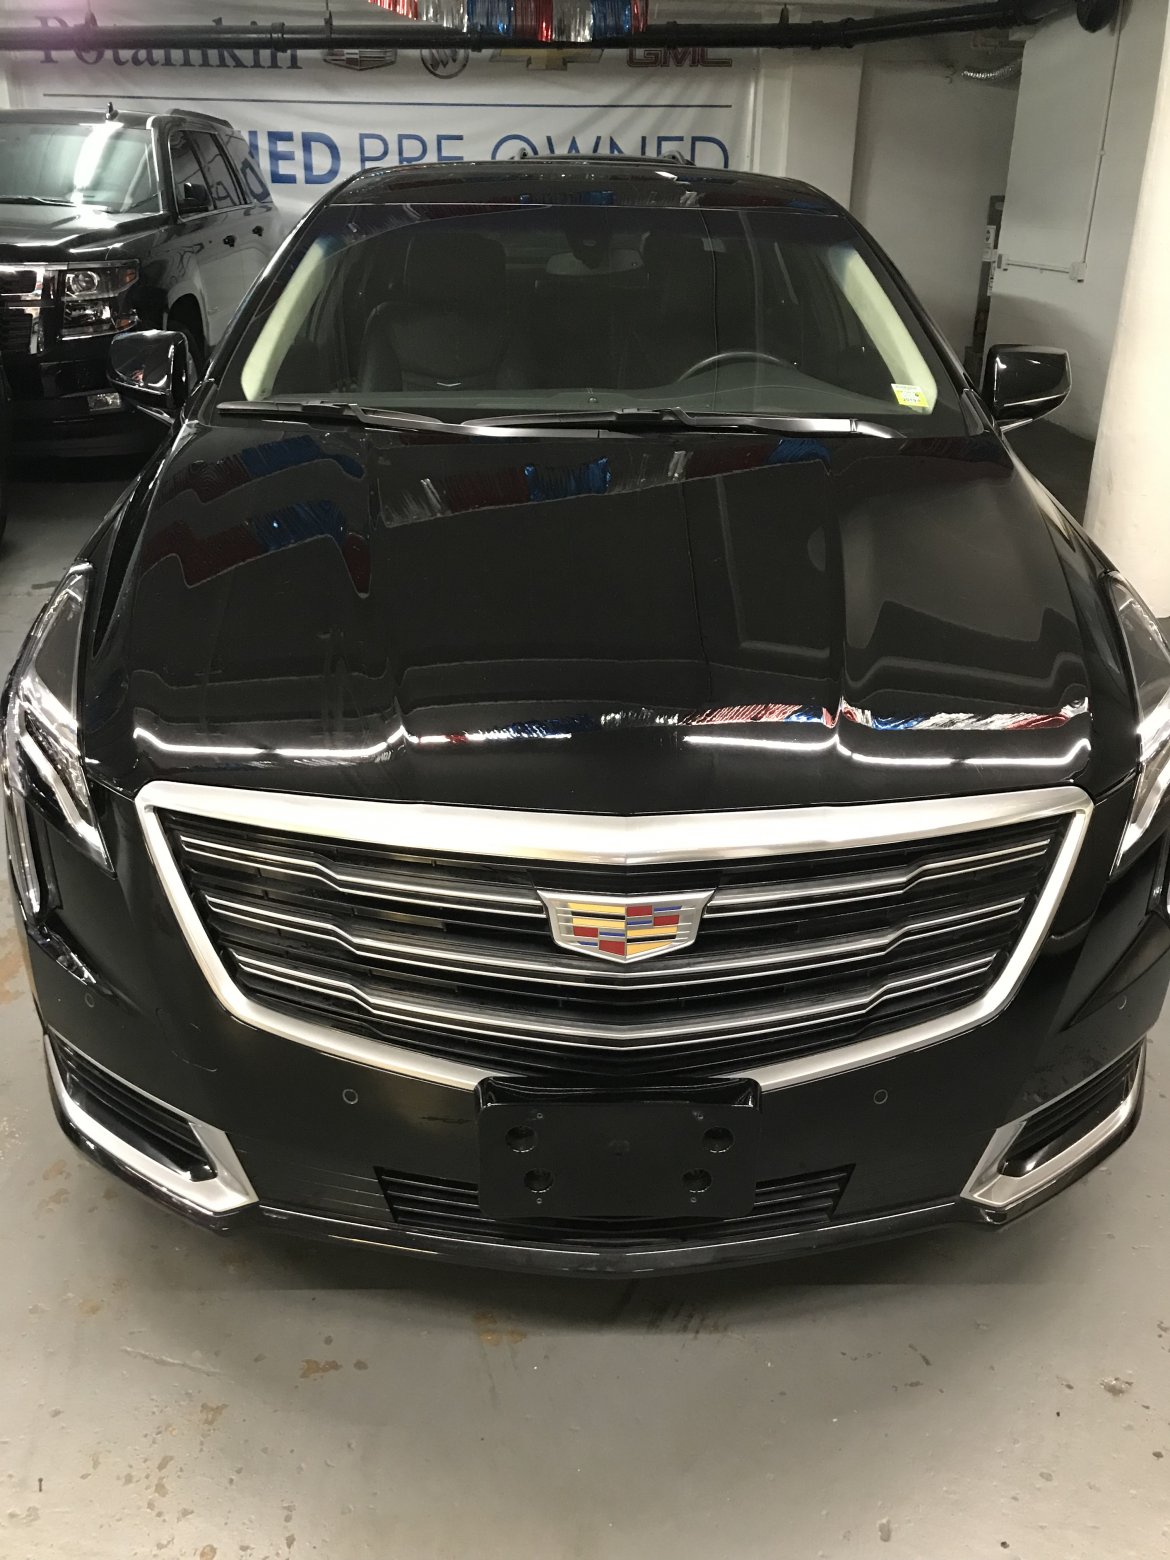 Limousine for sale: 2019 Cadillac XTS - L 8&quot; by Lehmann-Peterson